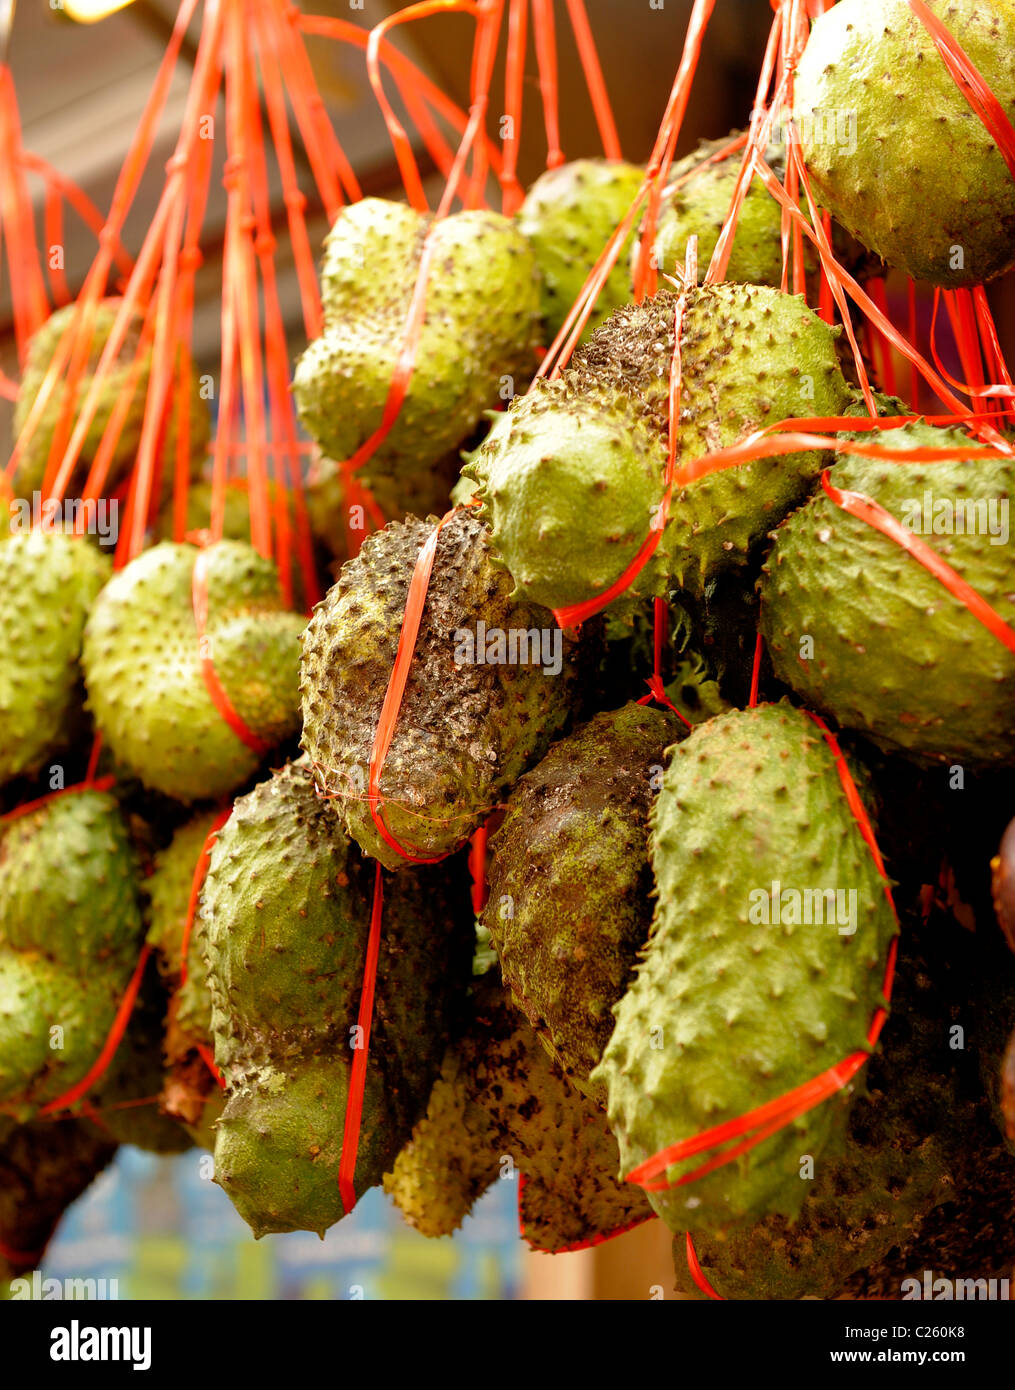 Petits fruits de corossol à vendre, fruits tropicaux de l'Asie du Sud-Est, Kuala Lumpur, Malaisie Banque D'Images